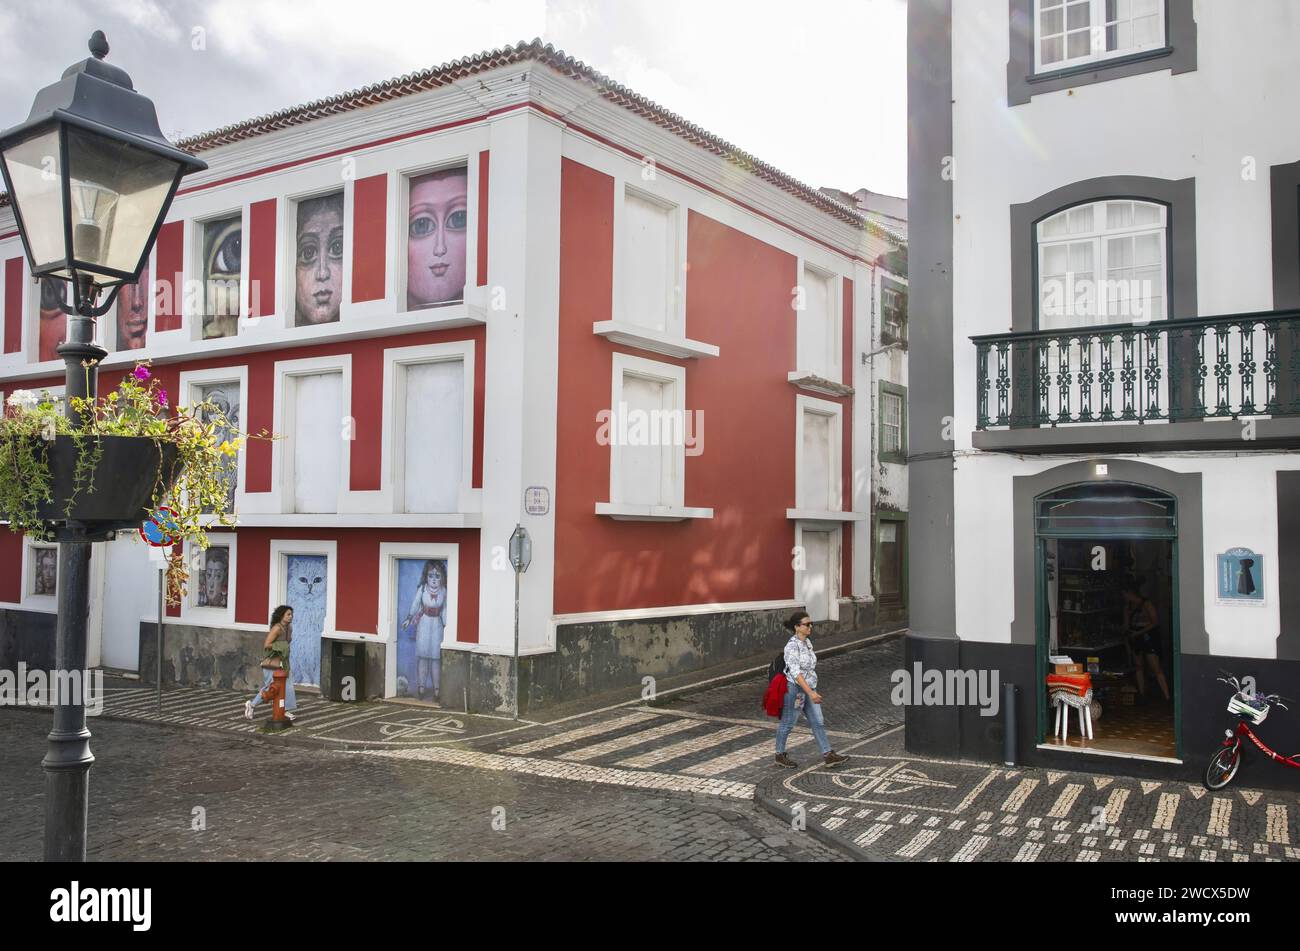 Portugal, archipel des Açores, île de Terceira, Angra do Heroismo, femme marchant dans une ruelle pavée dans le centre historique parmi les bâtiments coloniaux colorés avec des toits de tuiles Banque D'Images